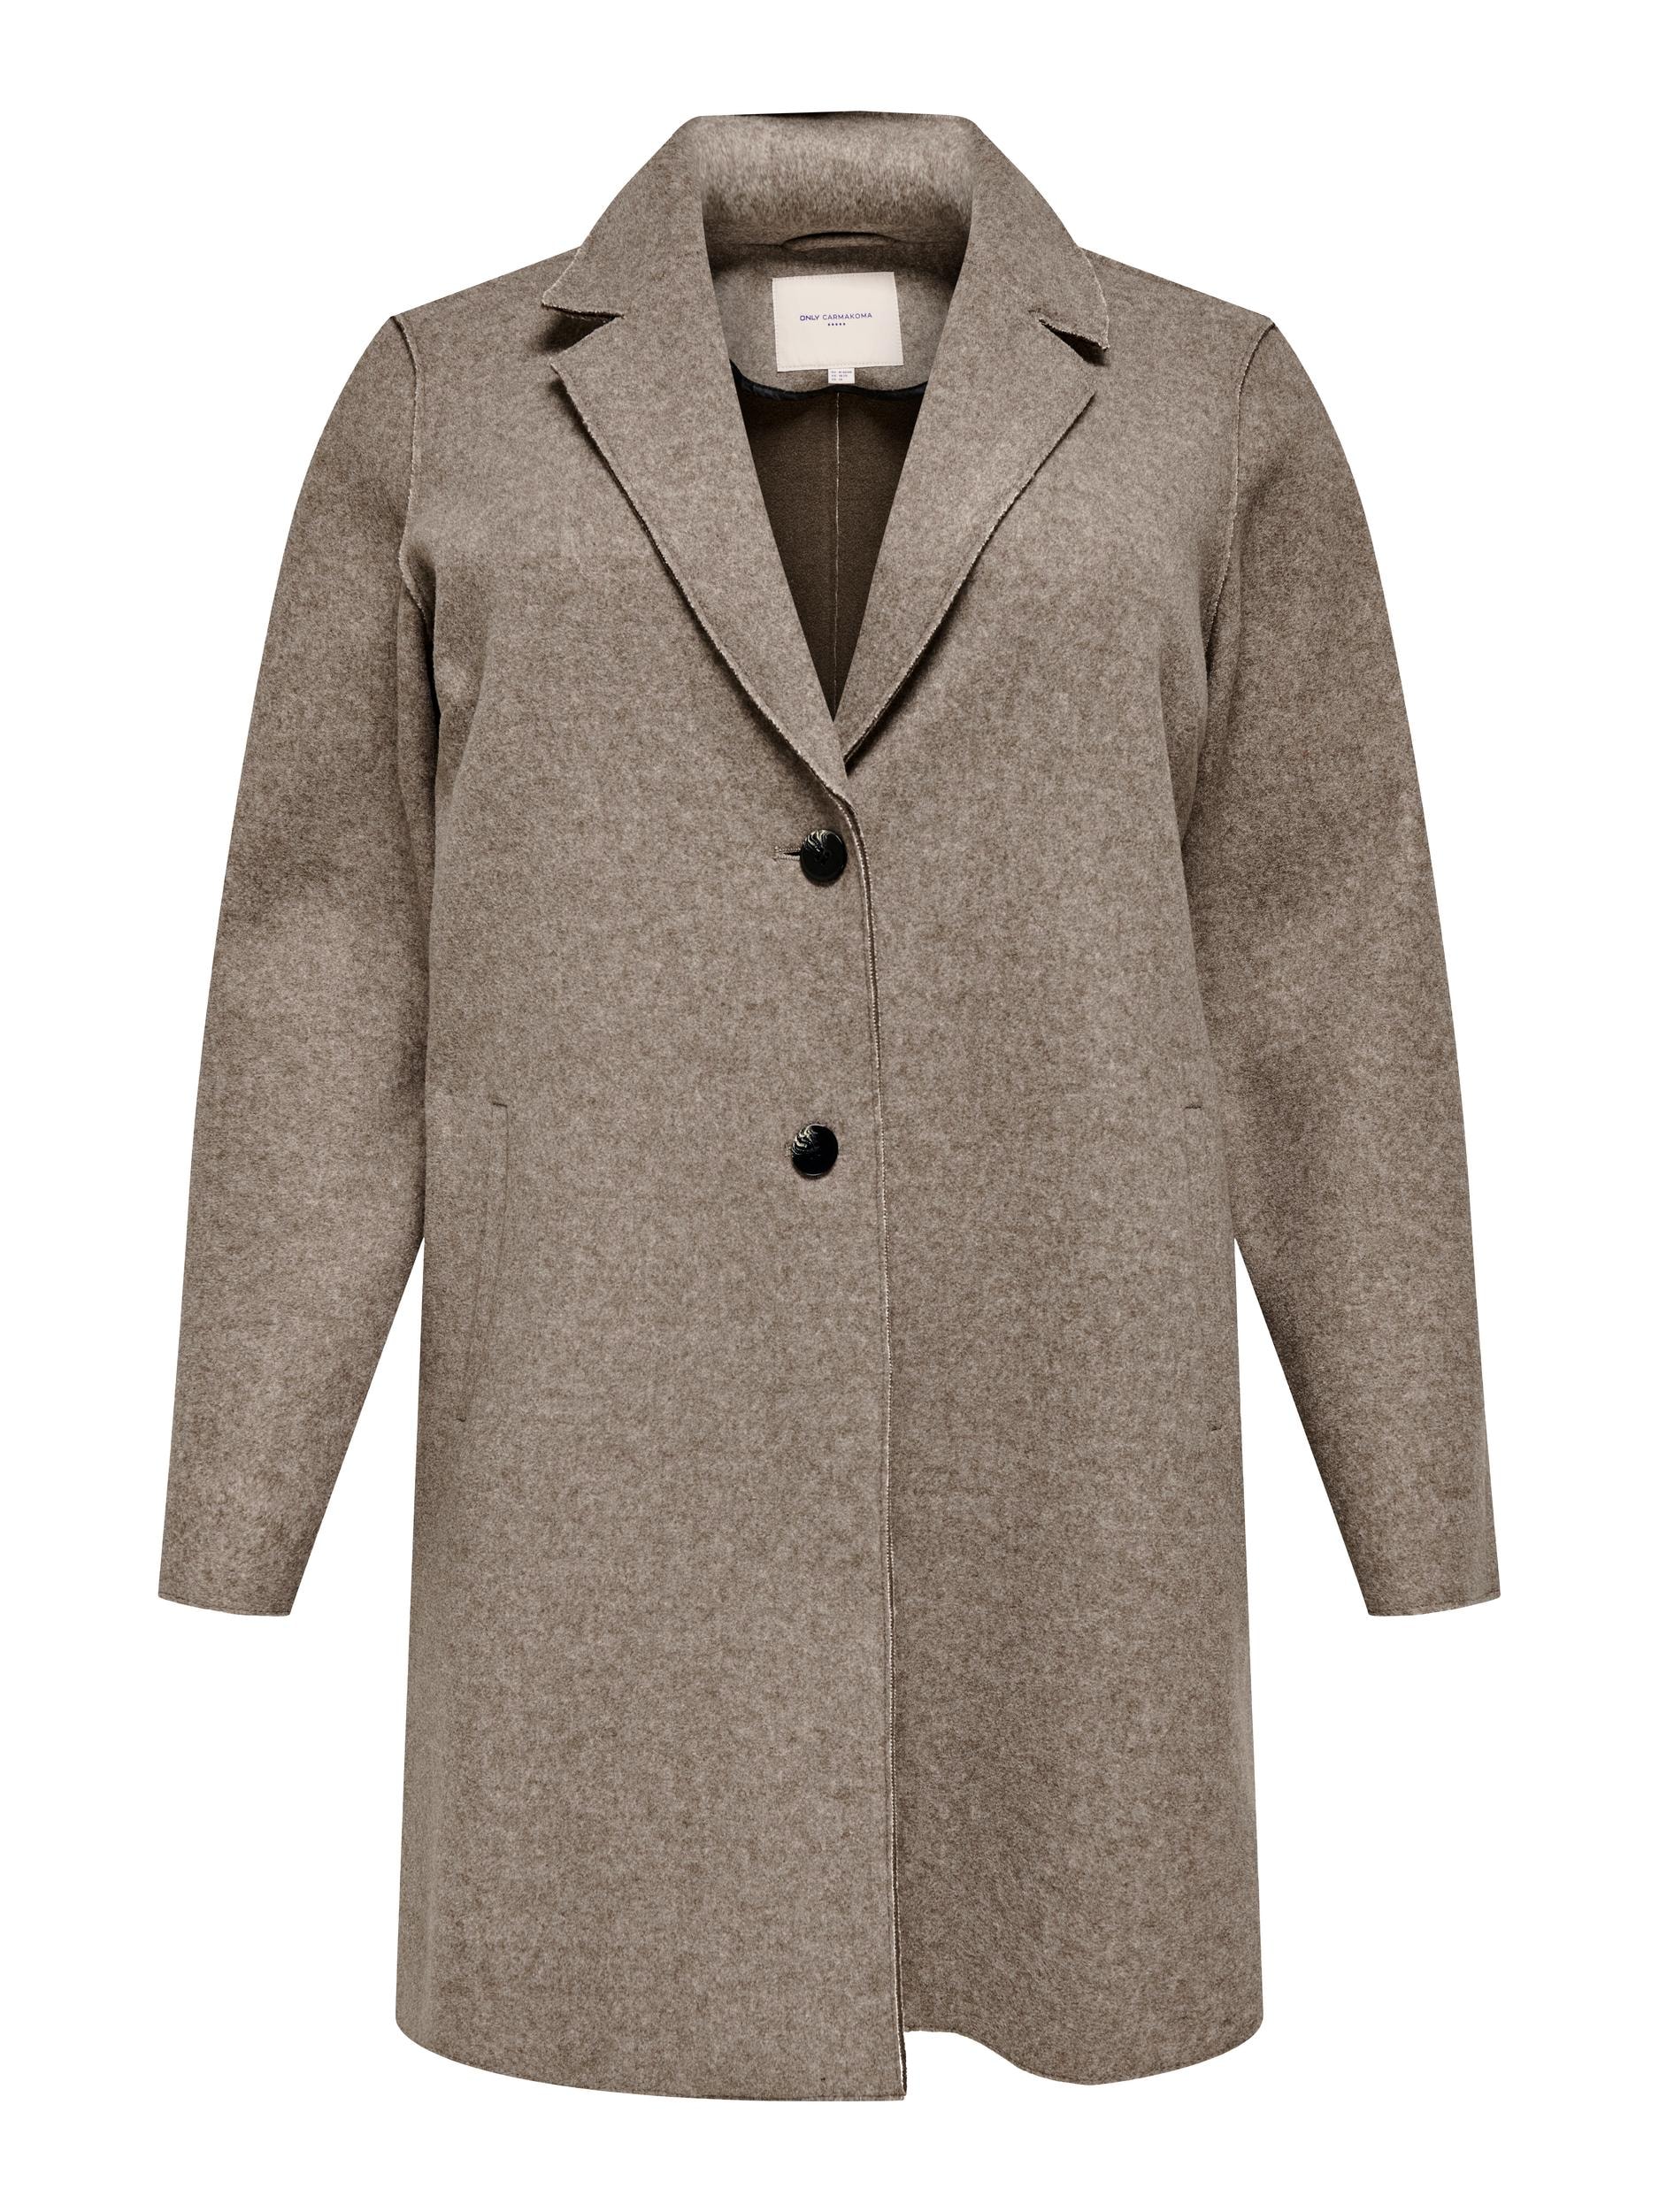 Braune Mäntel für Damen kaufen » rost- & dunkelbraun | BAUR